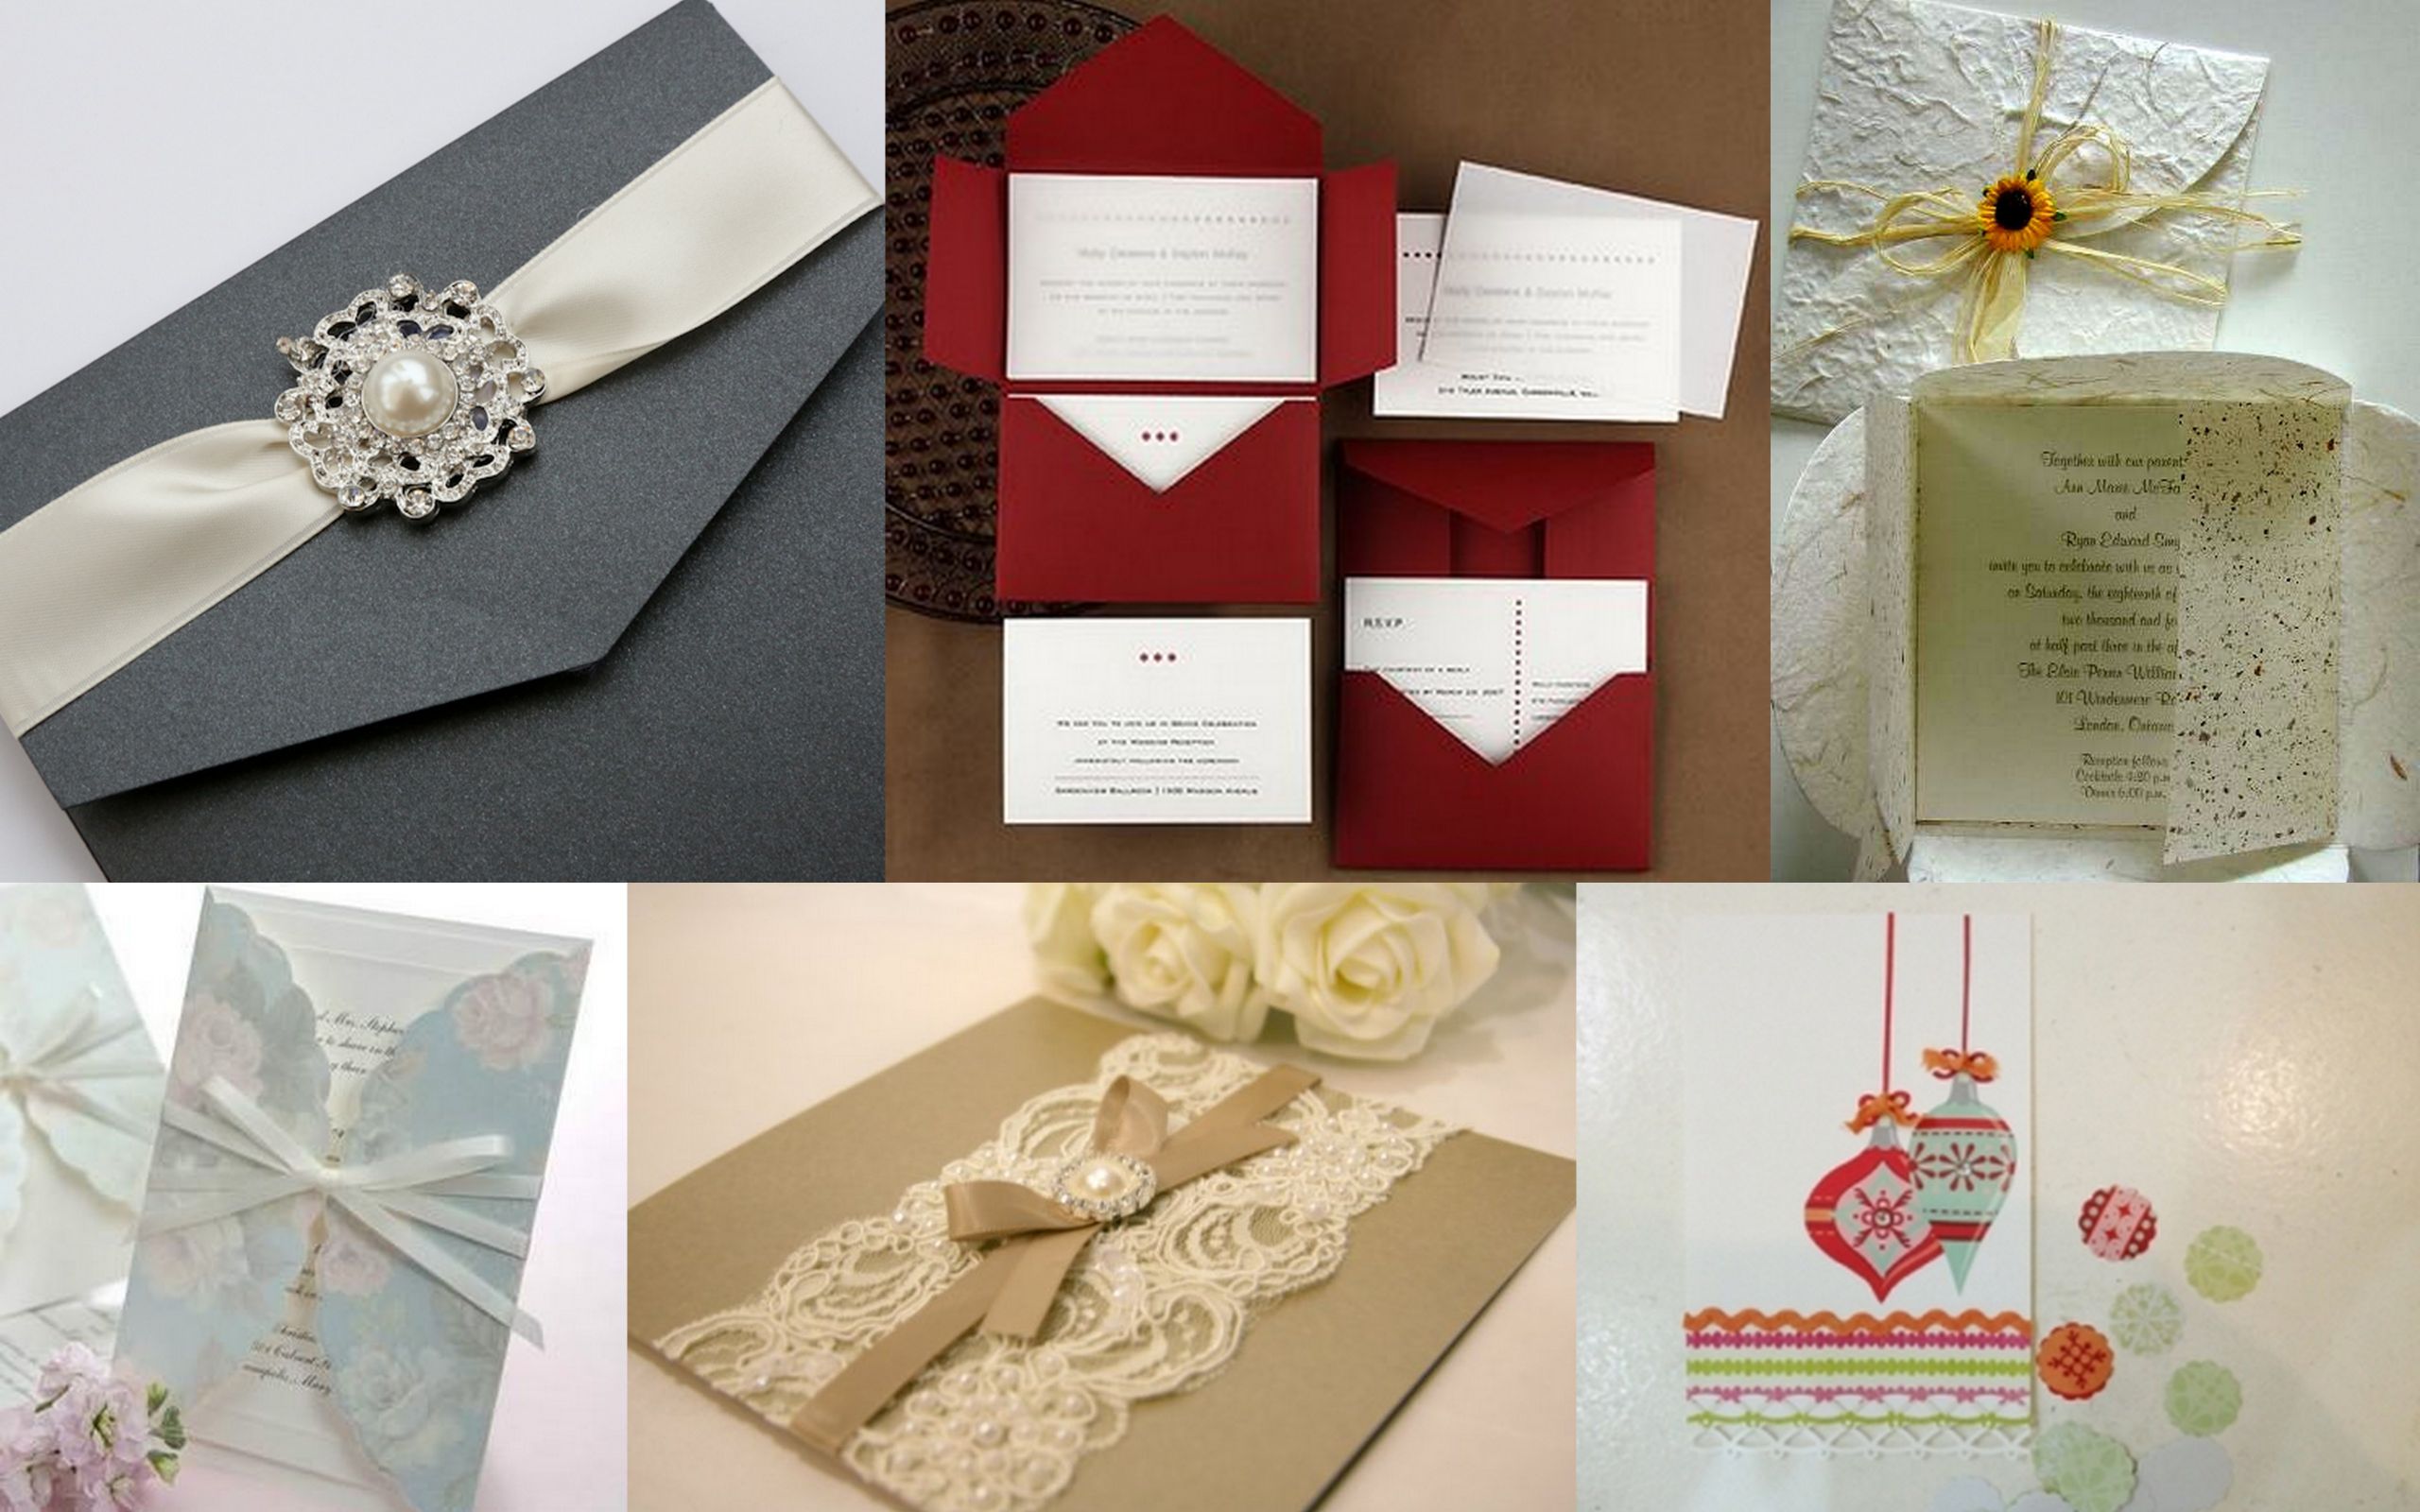 Wedding Invitations Under $1
 Wedding card ideas that make your wedding bud friendly